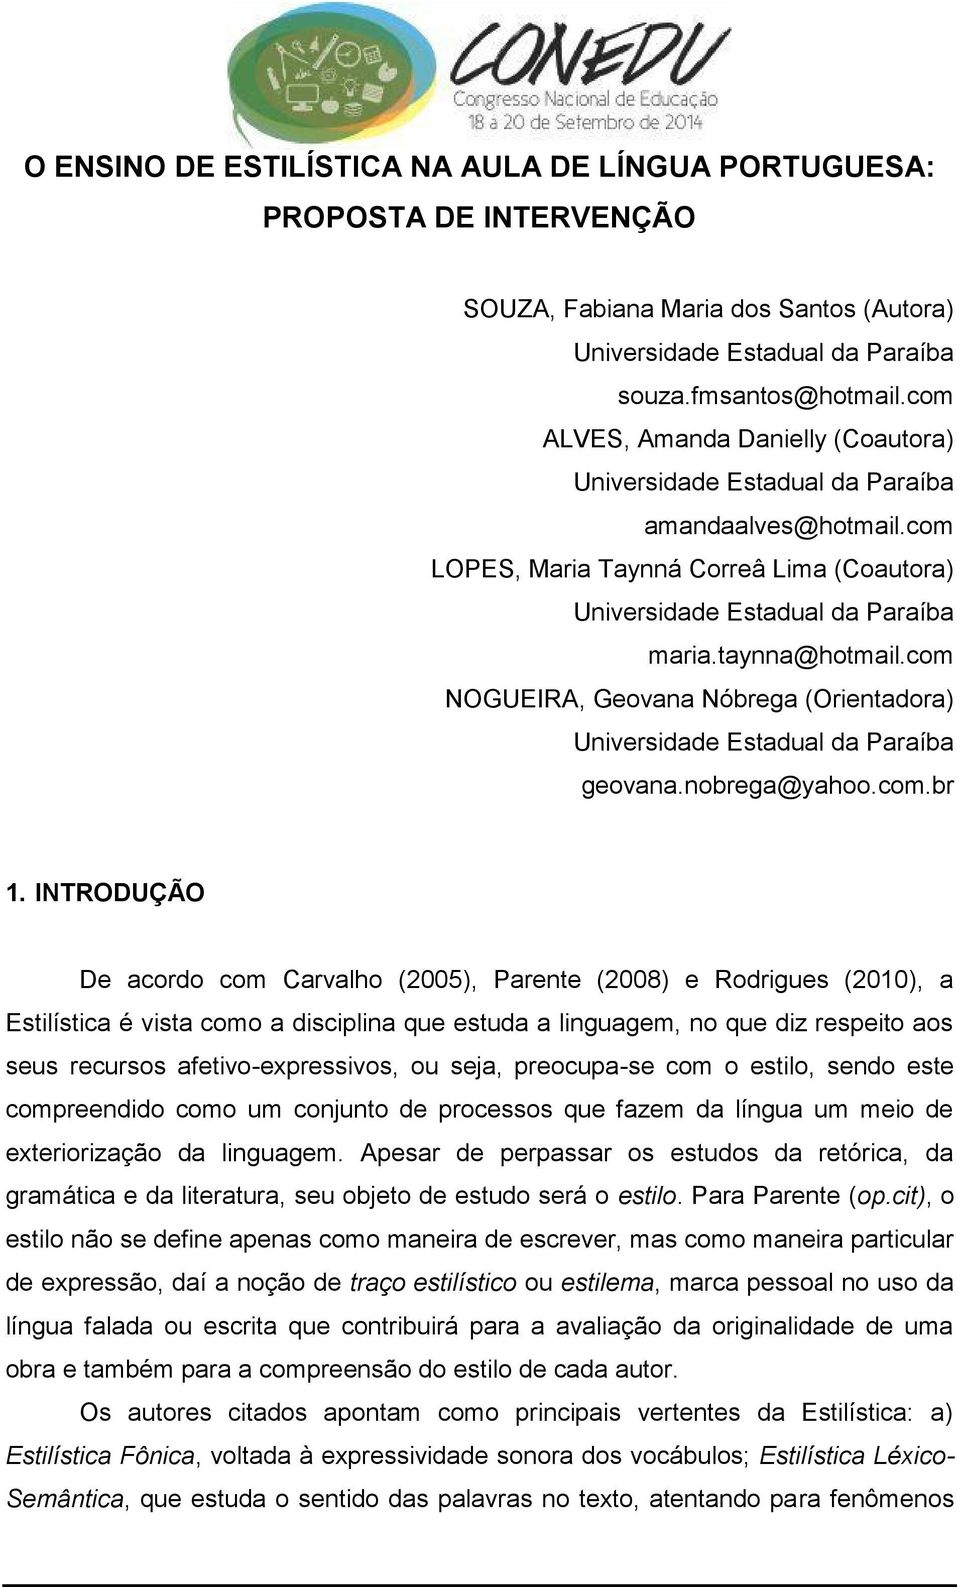 INTRODUÇÃO De acordo com Carvalho (2005), Parente (2008) e Rodrigues (2010), a Estilística é vista como a disciplina que estuda a linguagem, no que diz respeito aos seus recursos afetivo-expressivos,